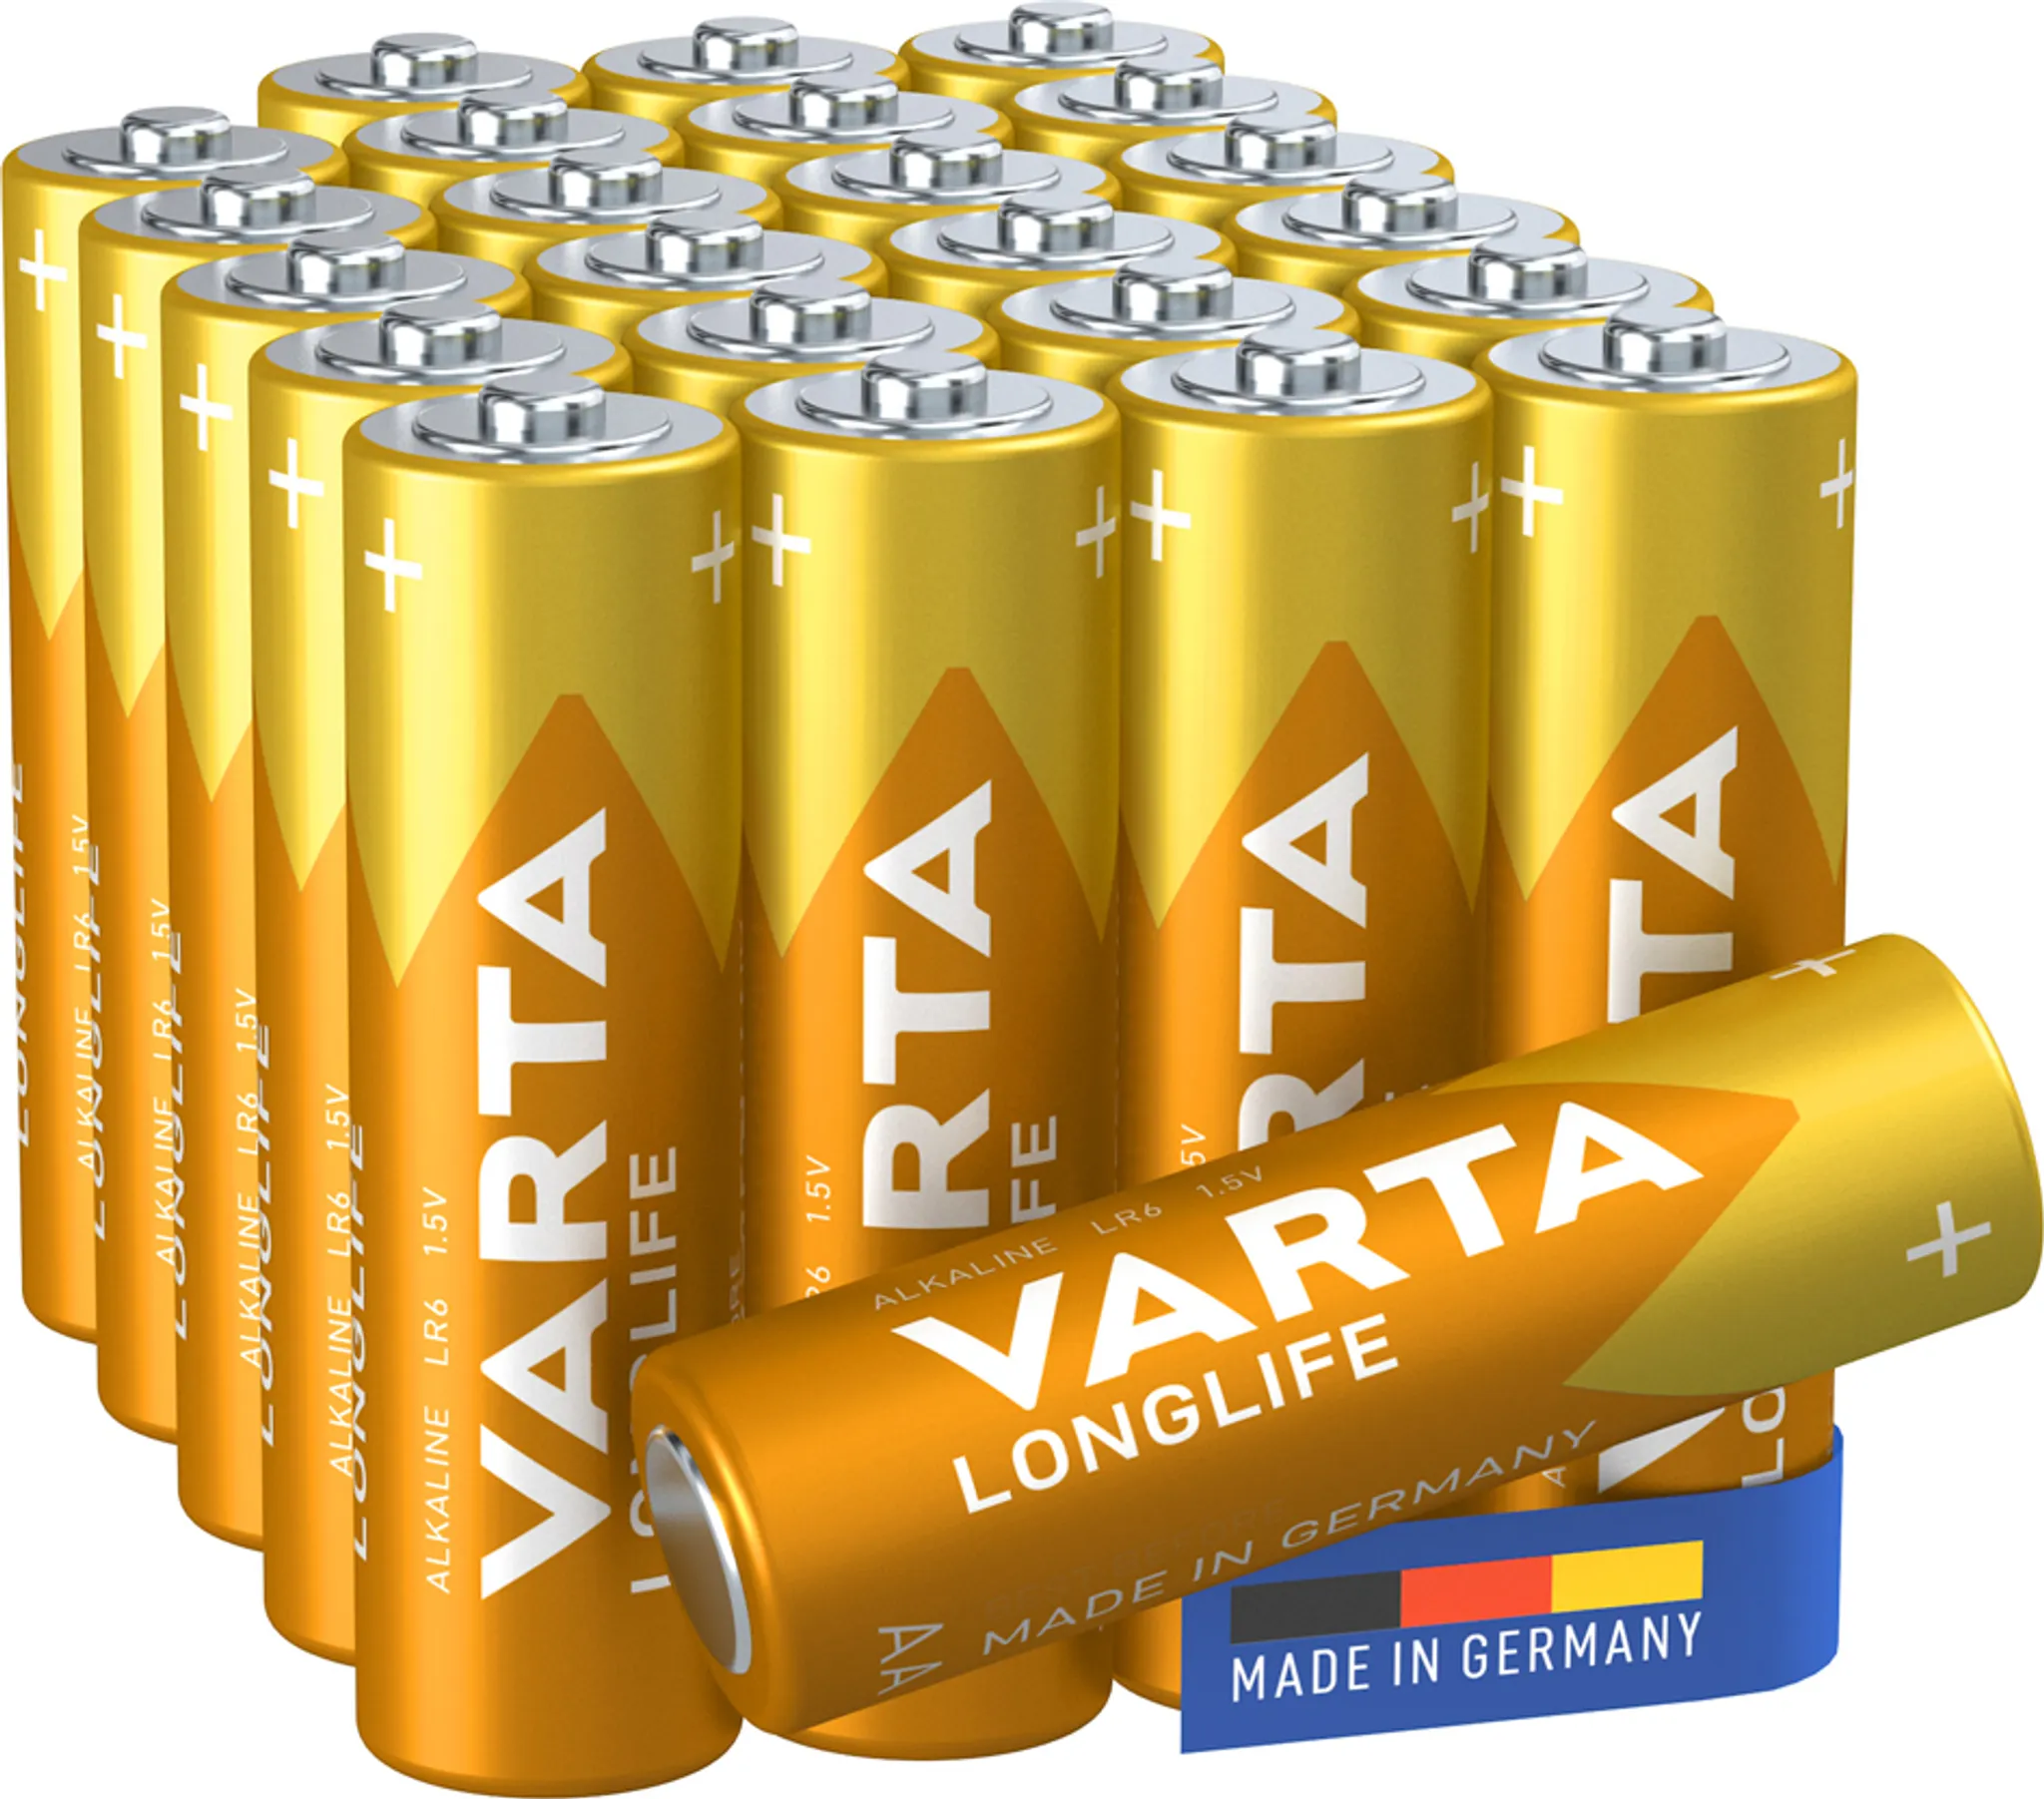 VARTA D / LR20 Industrial Batterie ab 1,14 €